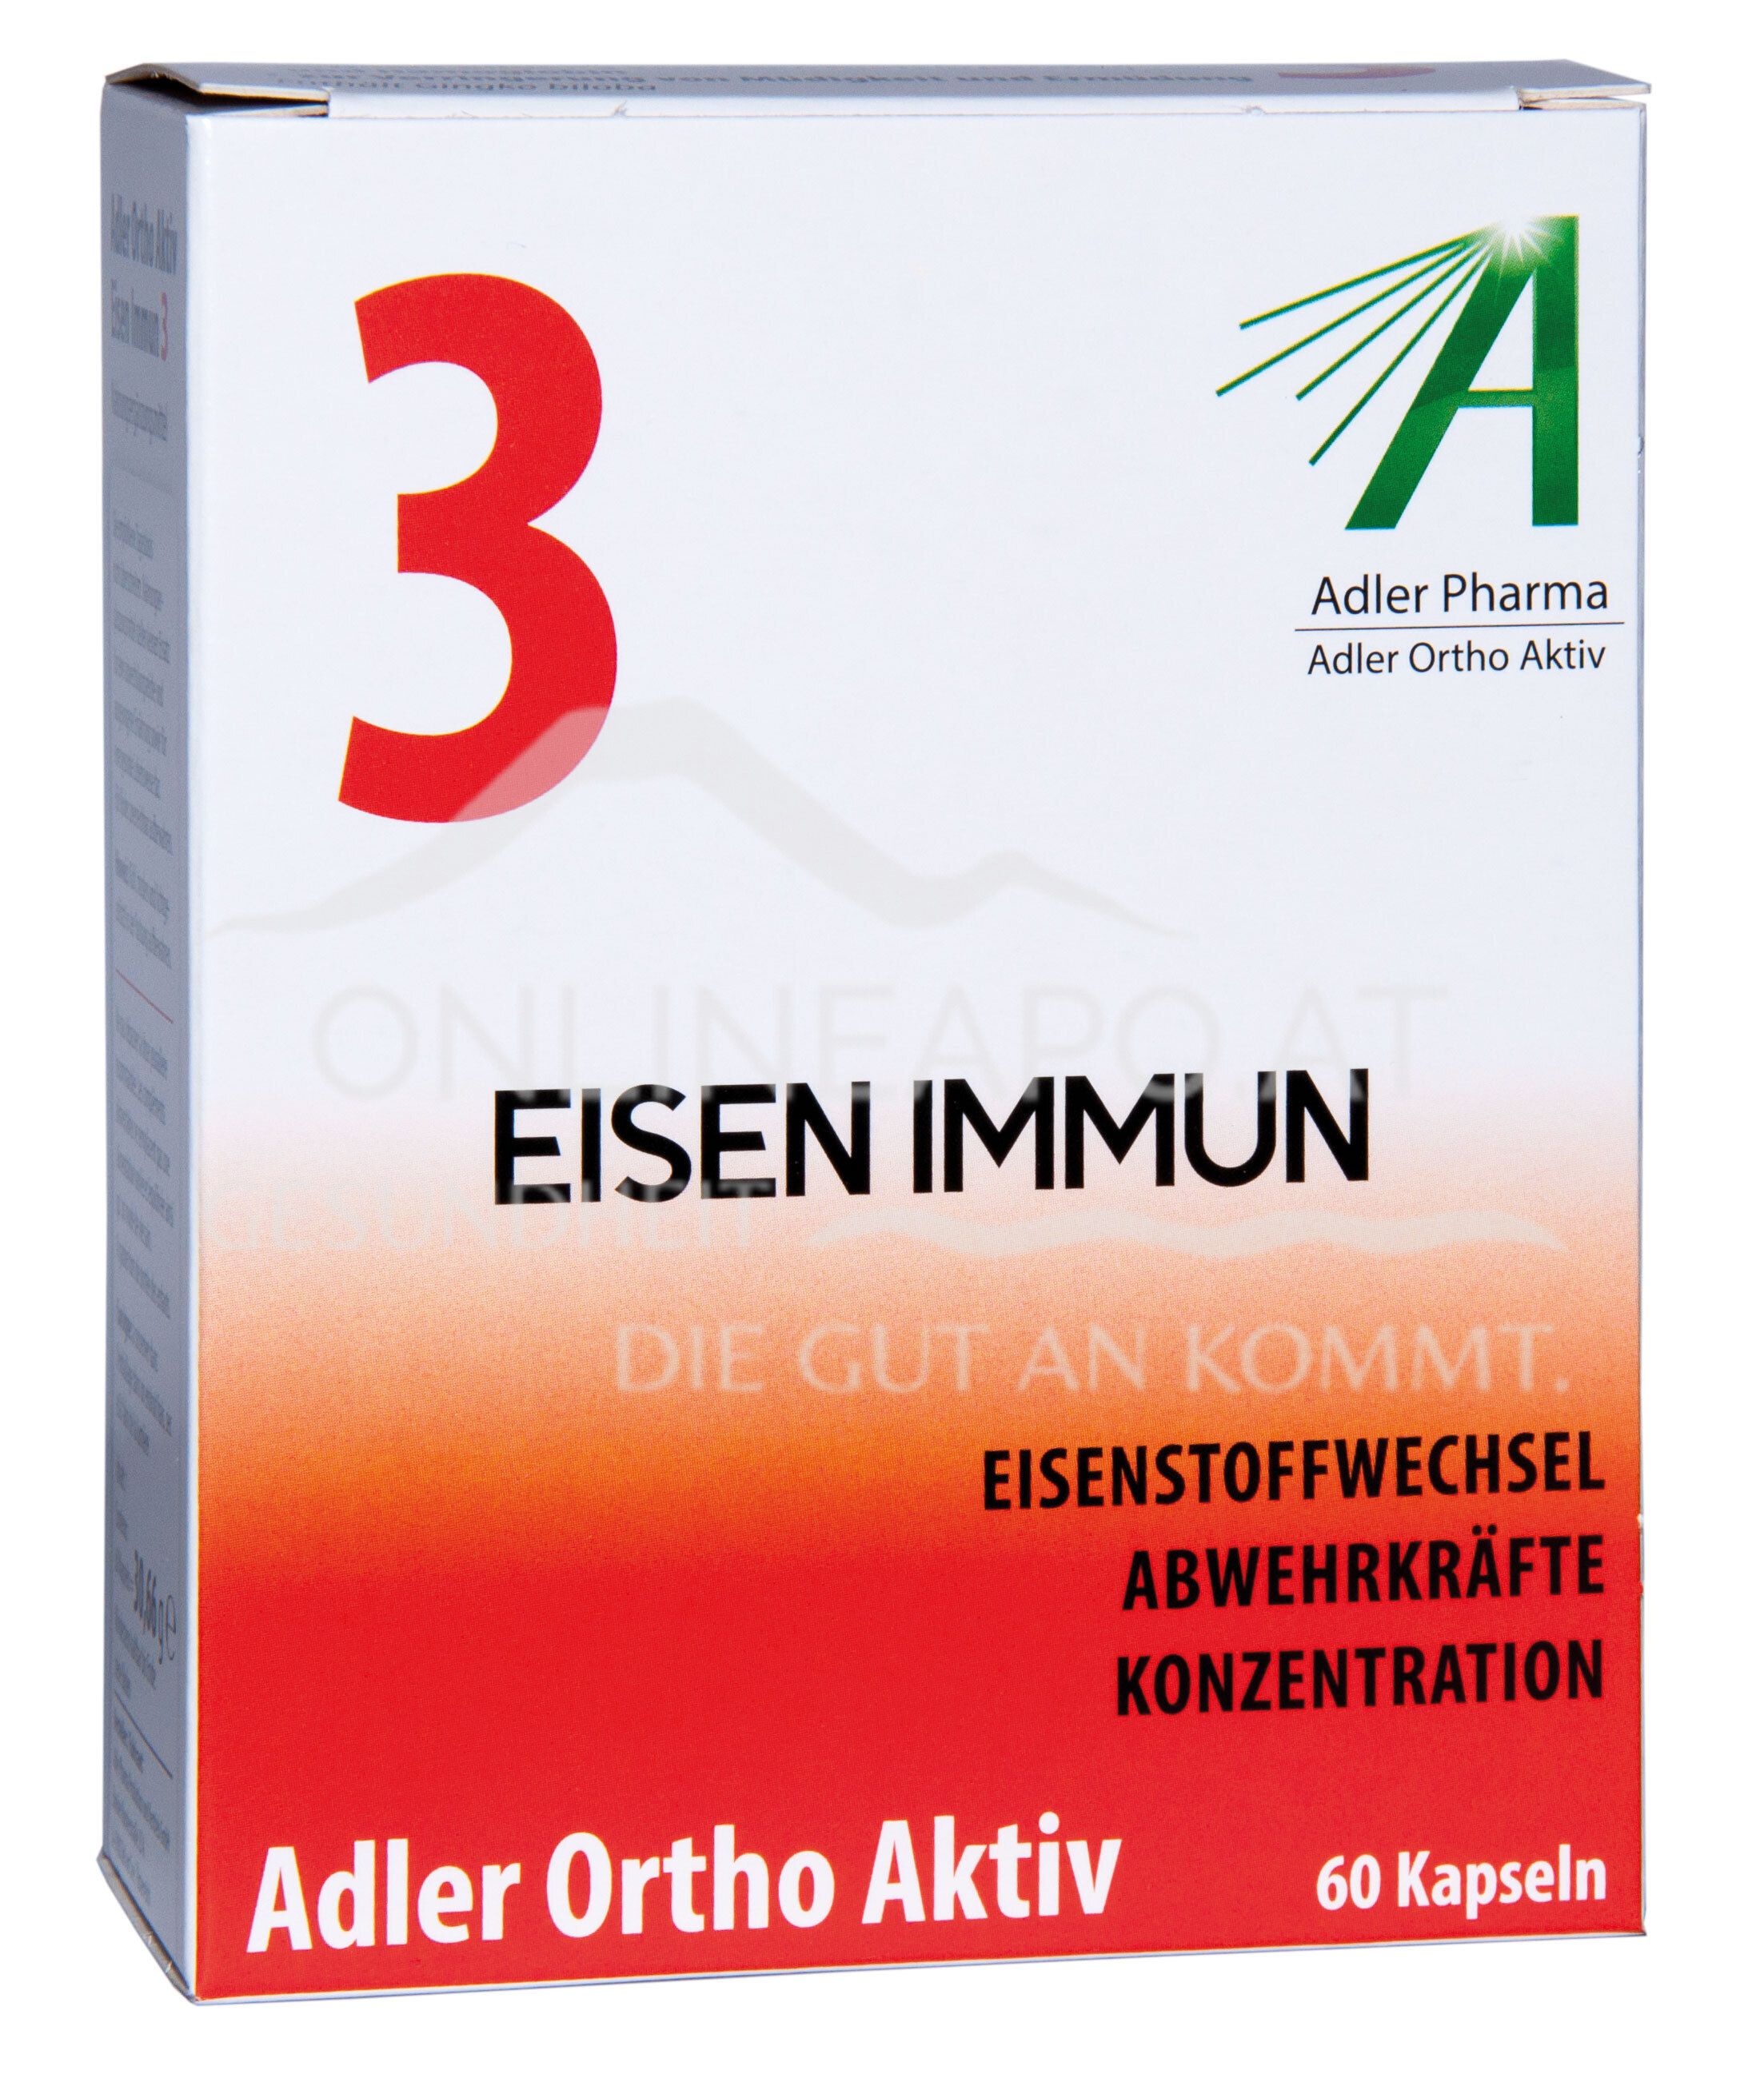 Adler Ortho Aktiv Nr. 3 Eisen Immun Kapseln